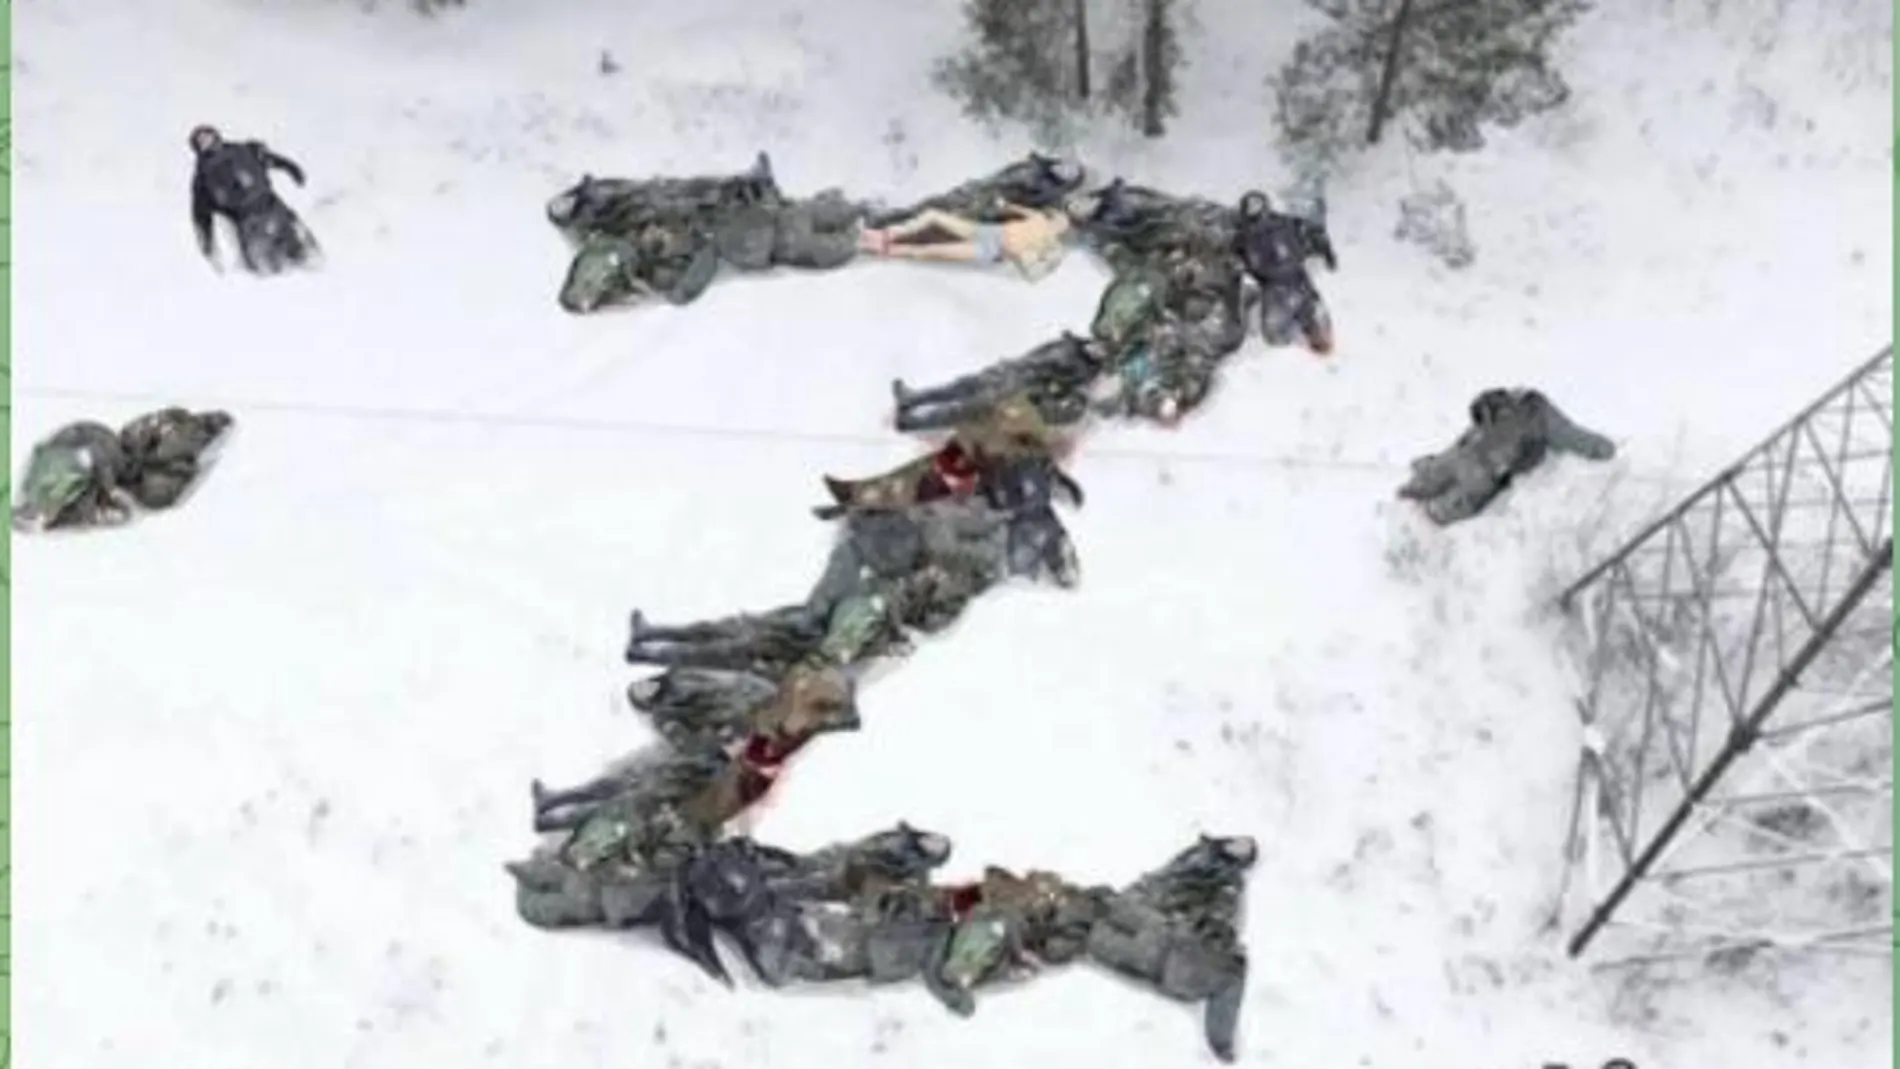 Foto difundida en canales de Telegram de supuestos cadáveres de soldados rusos formando la "Z" que llevan sus vehiculos durante la invasión de Ucrania